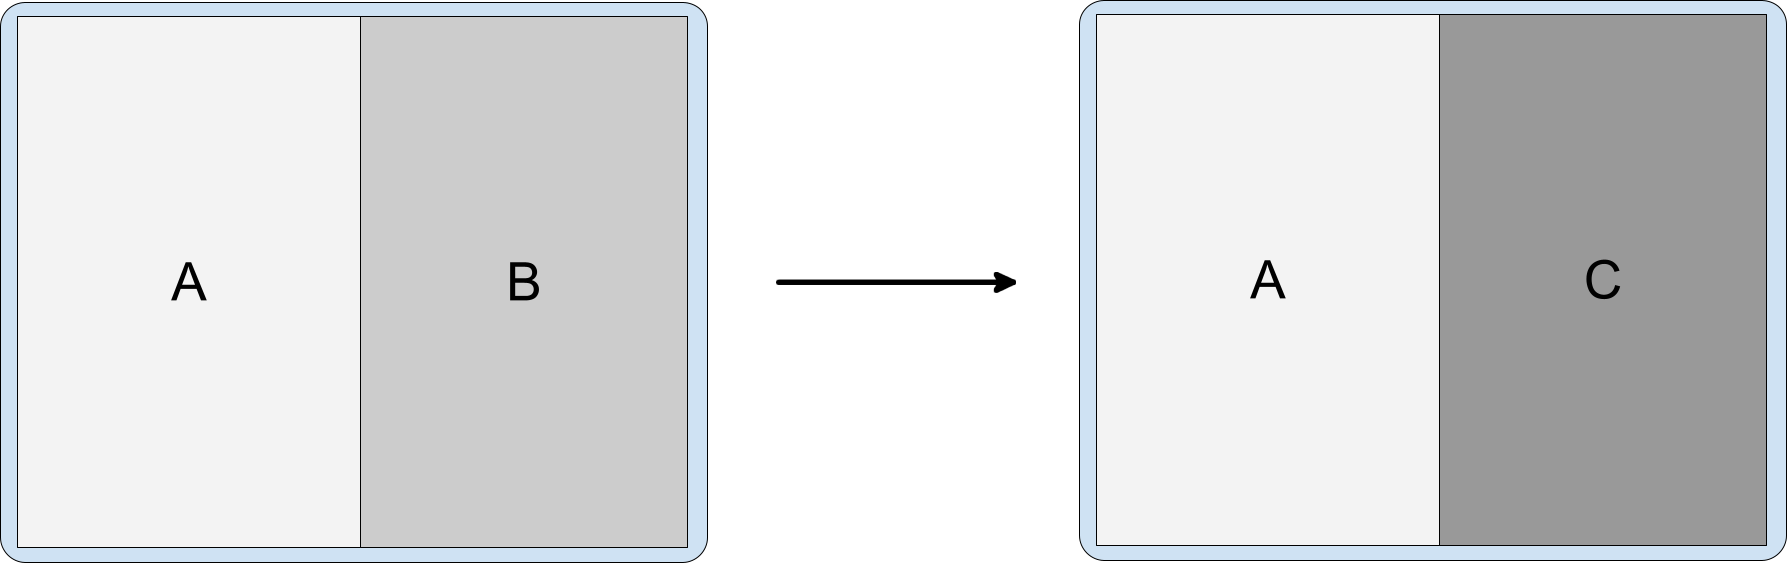 包含活動 A、B 和 C 的活動分割，其中 C 堆疊在 B 上方。